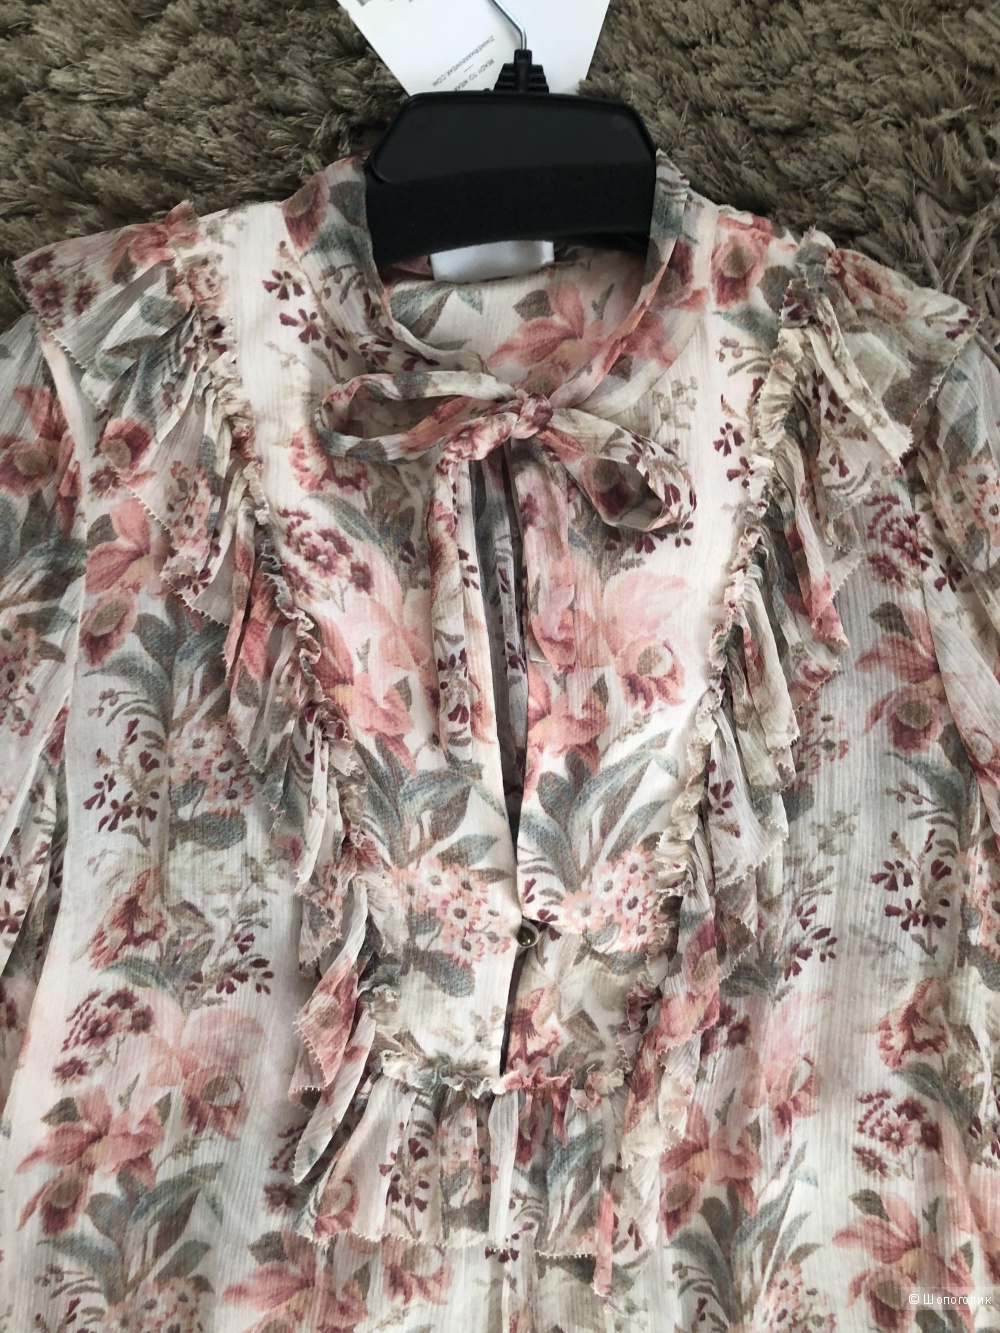 Шелковая блузка Zimmerman. Размер 2(44-46)